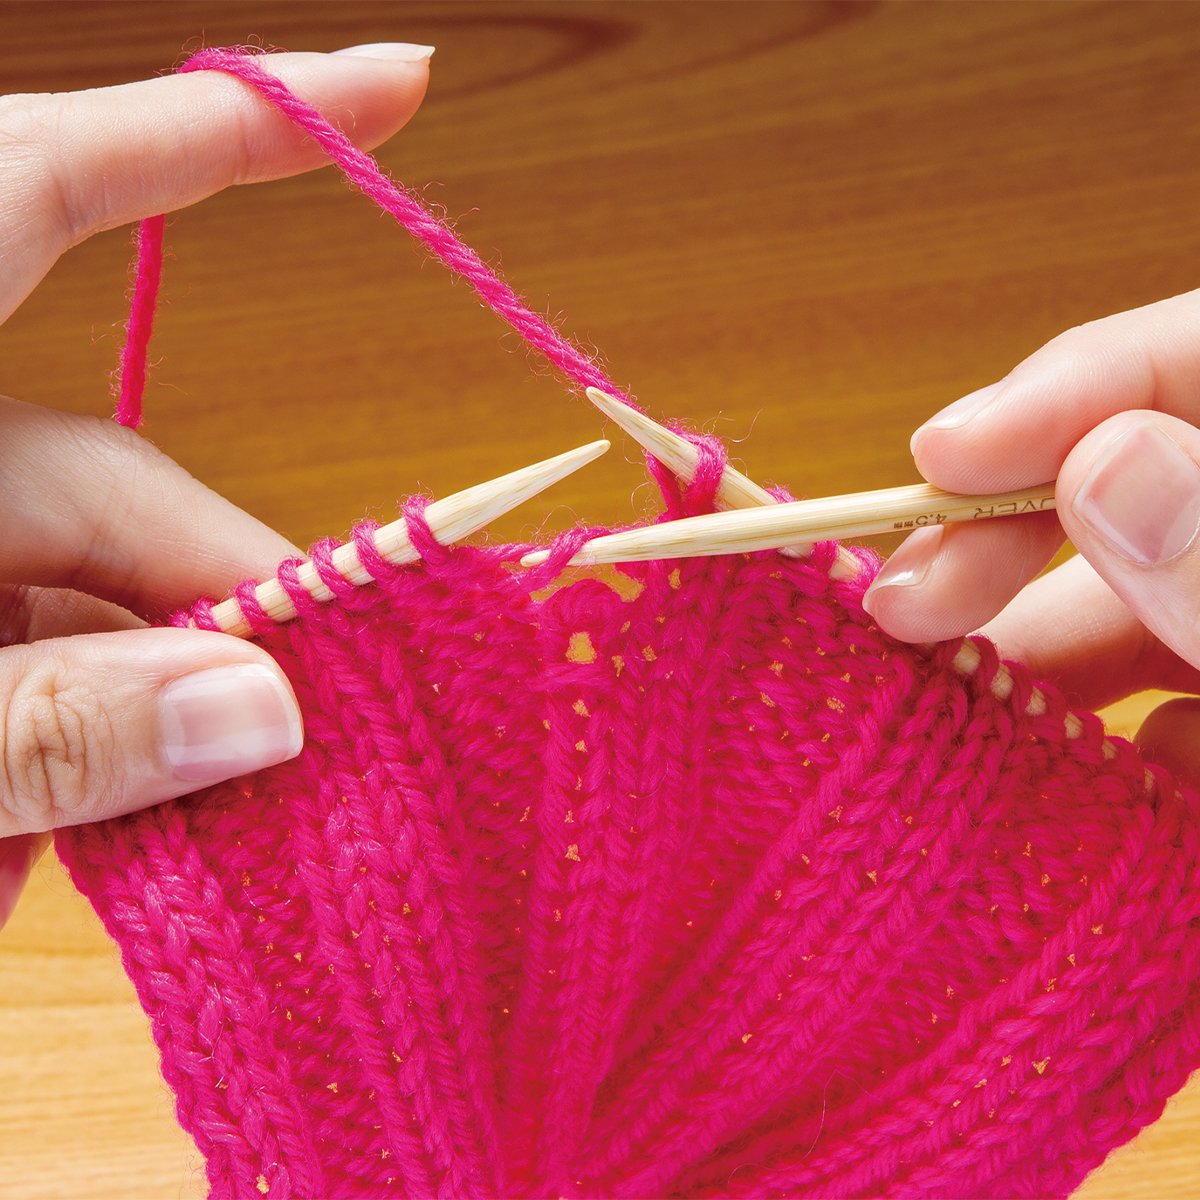 Clover - Soft Touch Crochet Hook (Size: 6,0 mm)